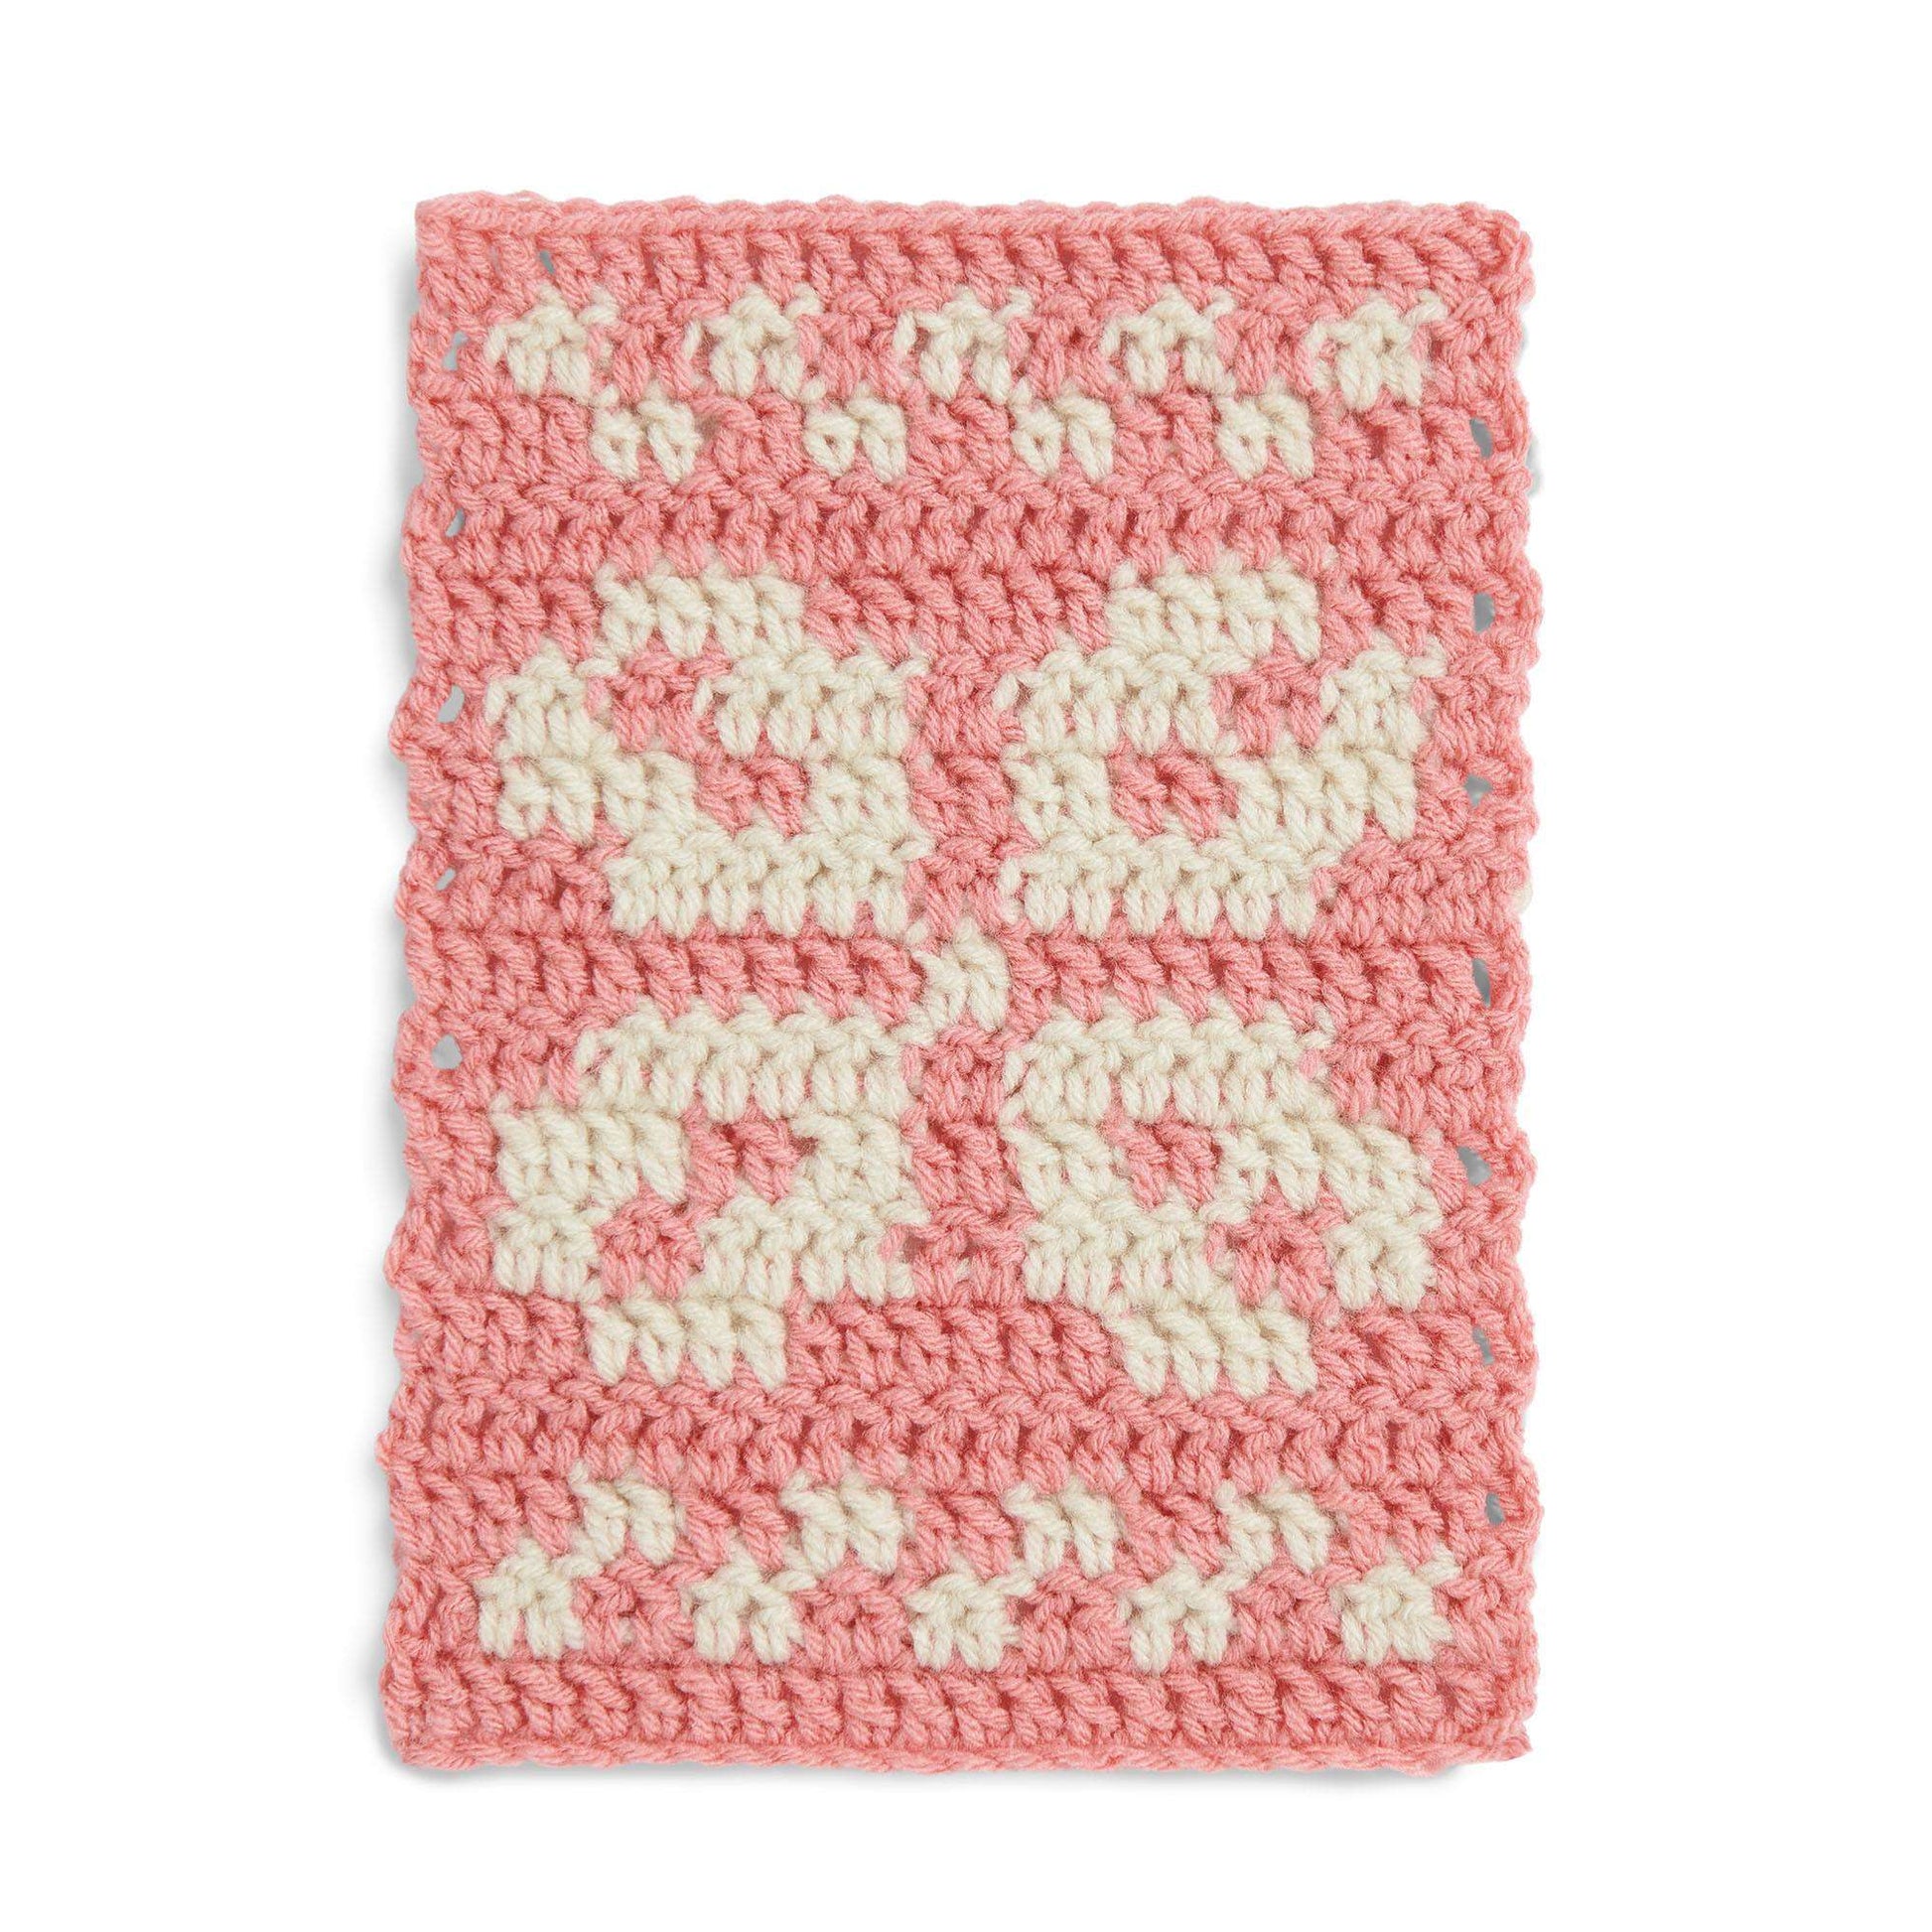 Free Red Heart Intarsia Flower Crochet Block Pattern